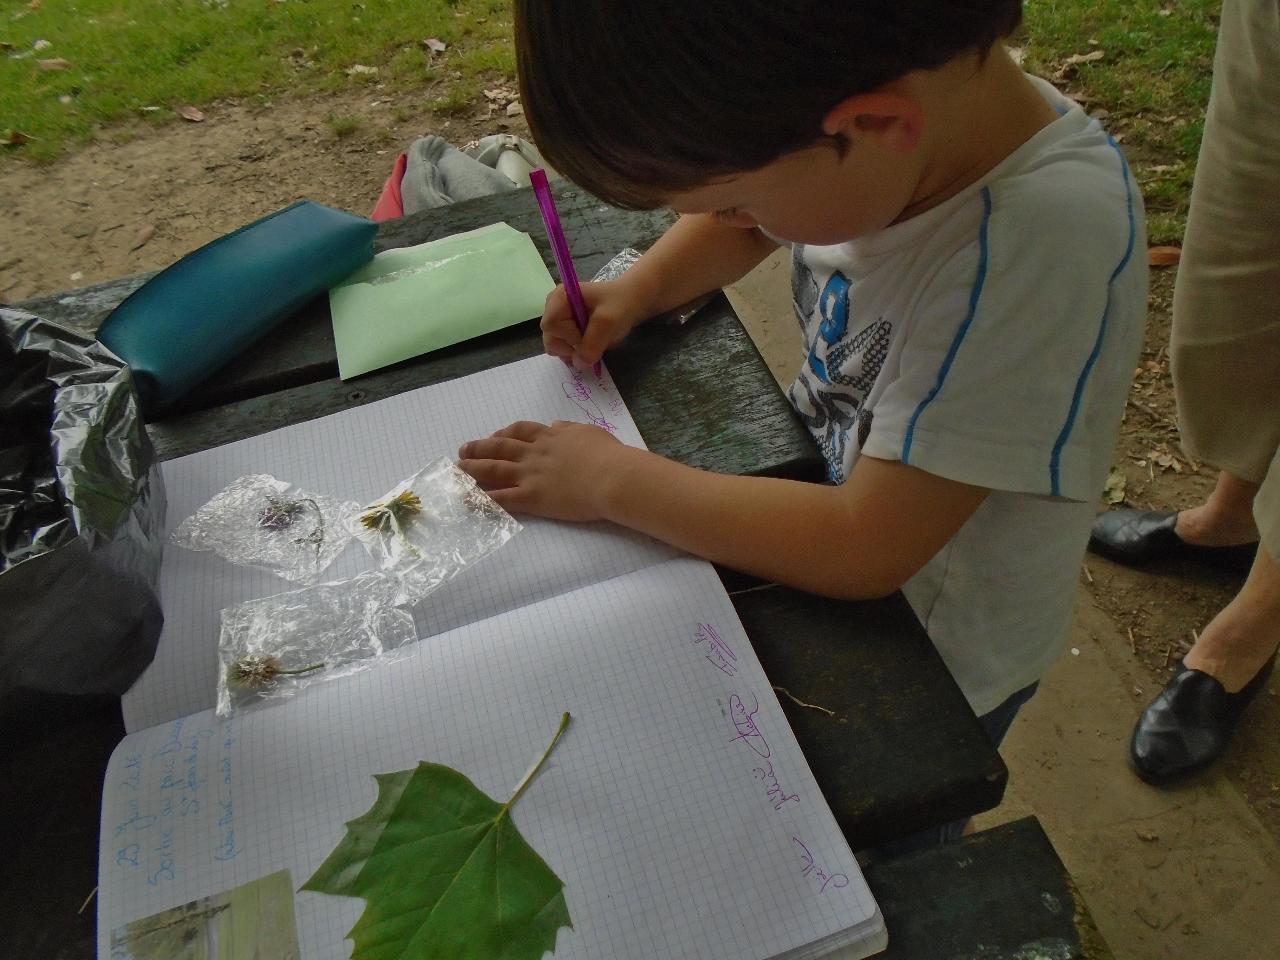 Temps de jeux "en tous sens" et préparation de l'herbier. Martin, 4 ans, signe soigneusement sa présence.